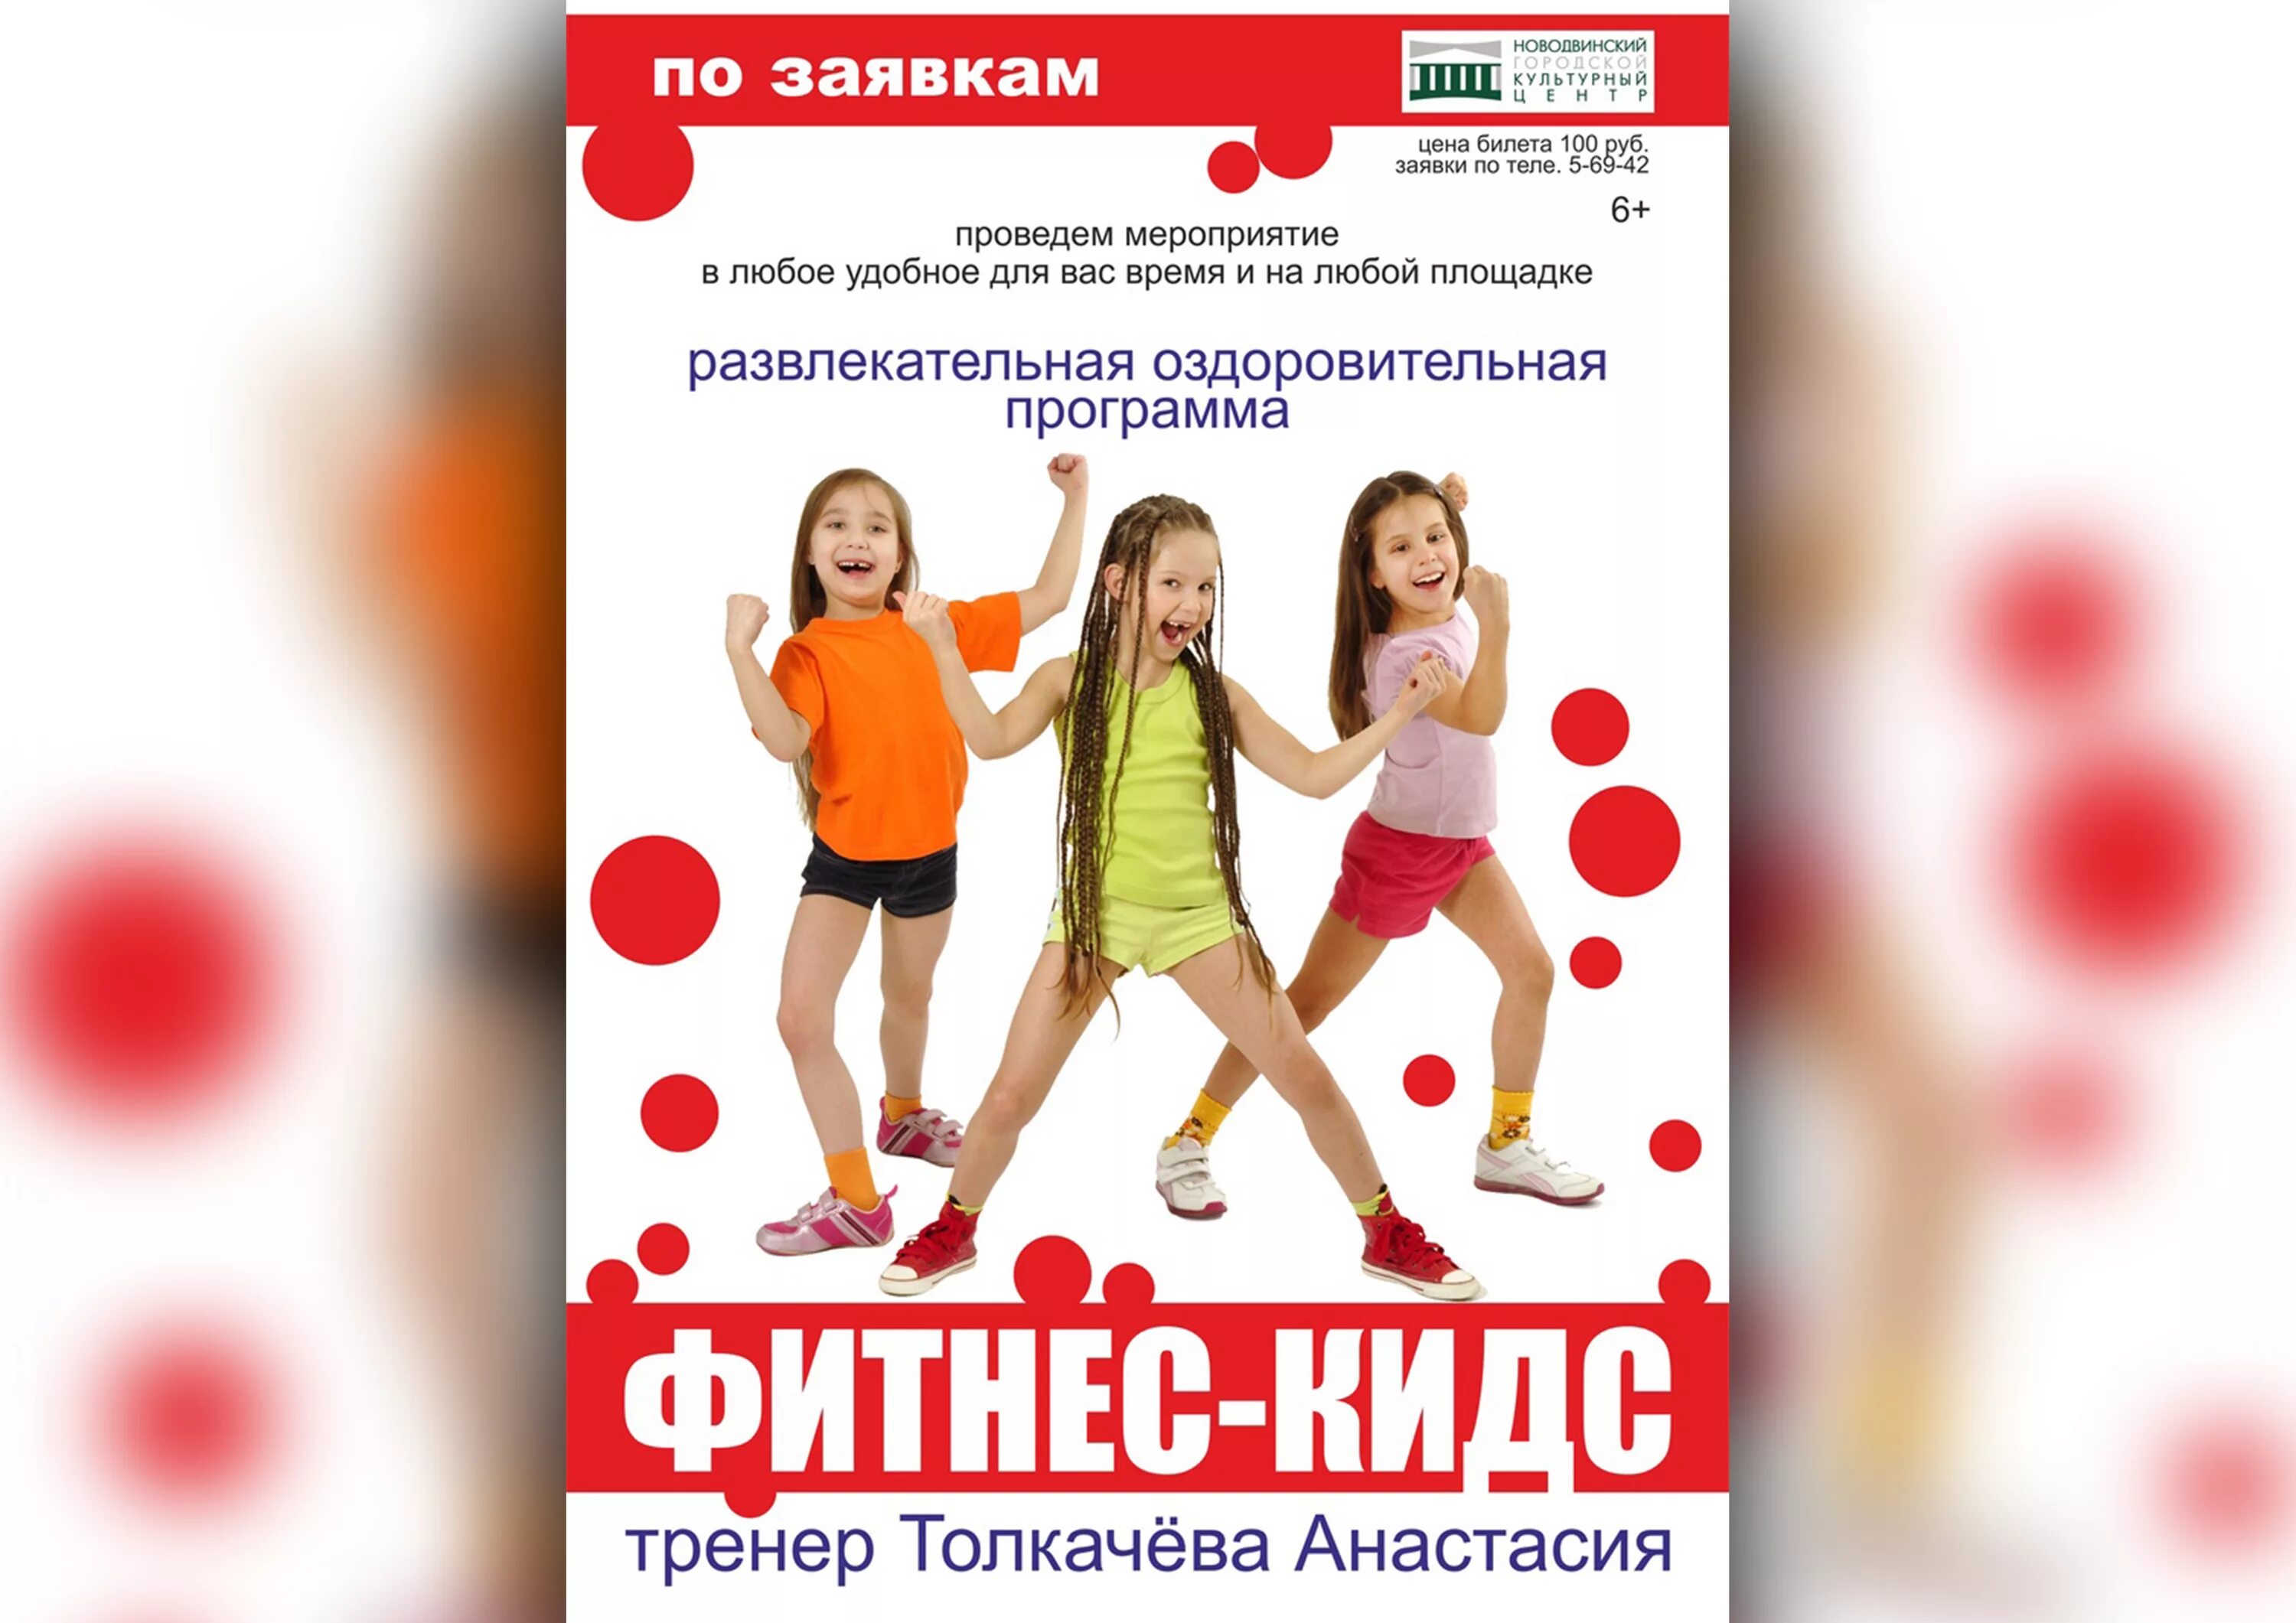 Программа для детей 9 лет. Детский фитнес. Фитнес для детей реклама. Название детского фитнеса. Объявление фитнес для детей.